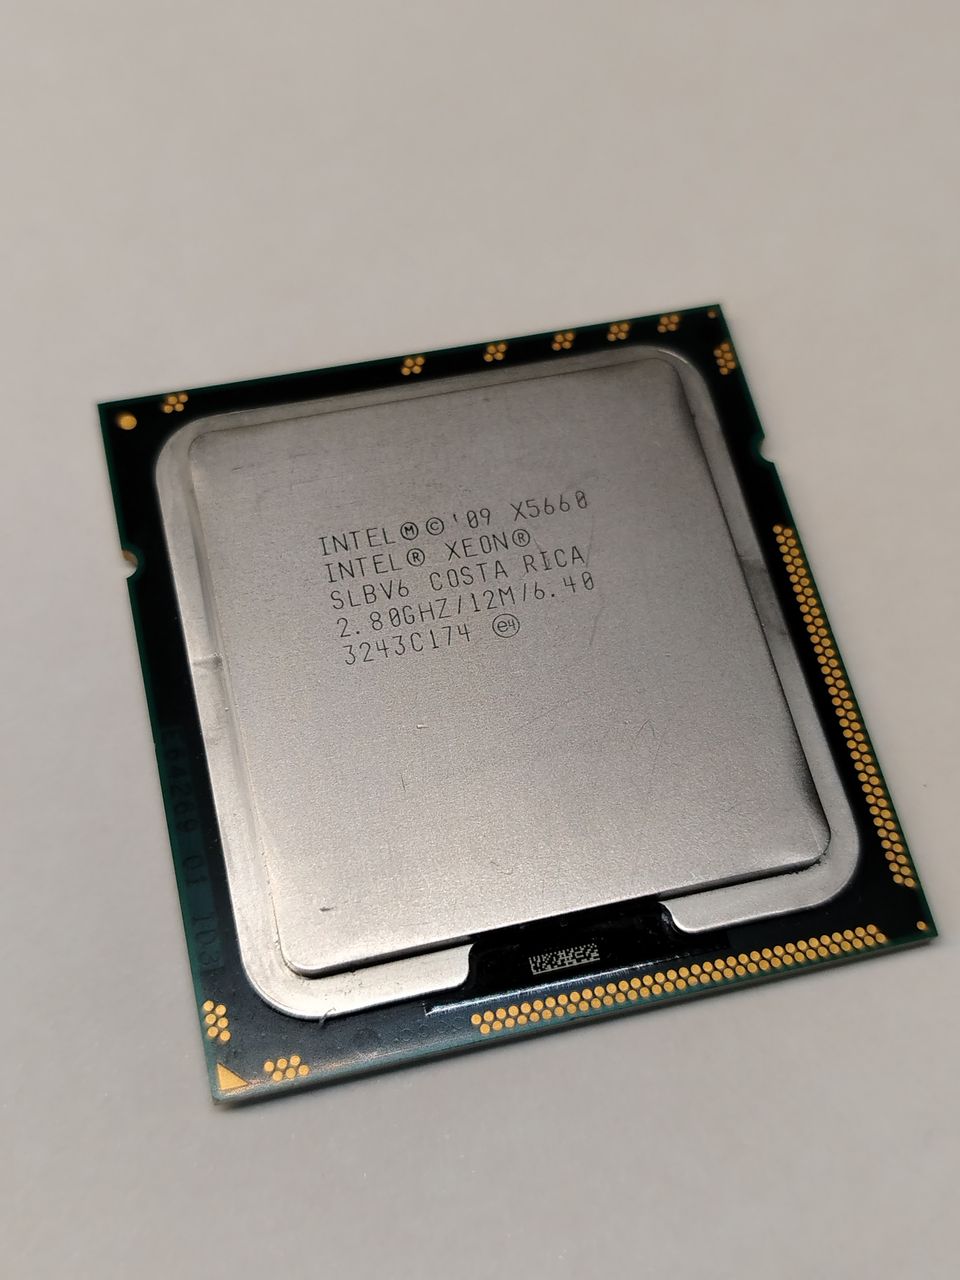 Intel Xeon X5660 2.80Ghz